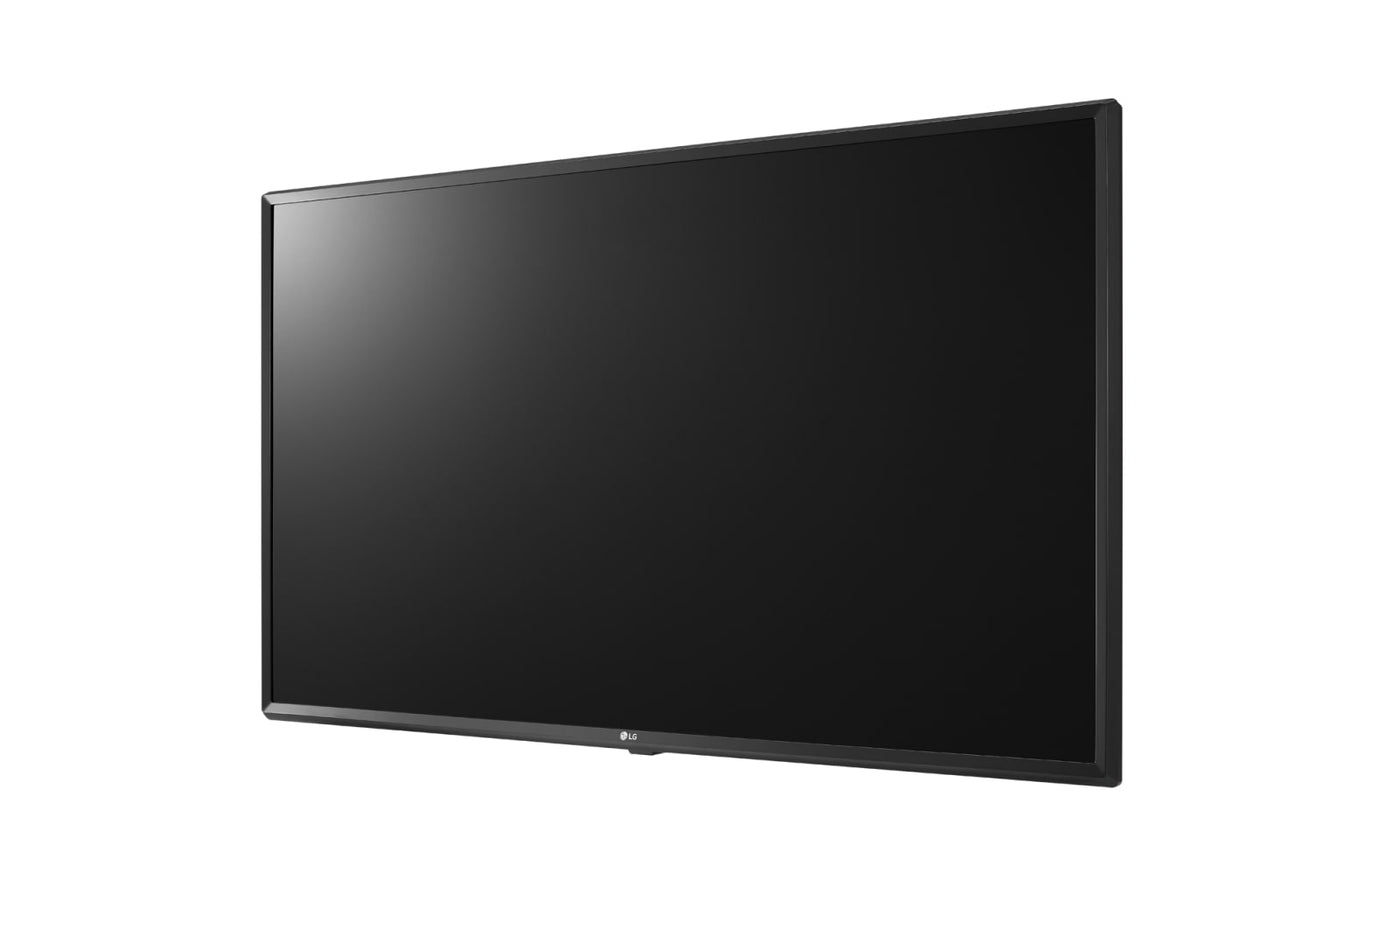 LG 86UT640S 86" Class 4K UHD Commercial Smart IPS LED TV Front View Alternate